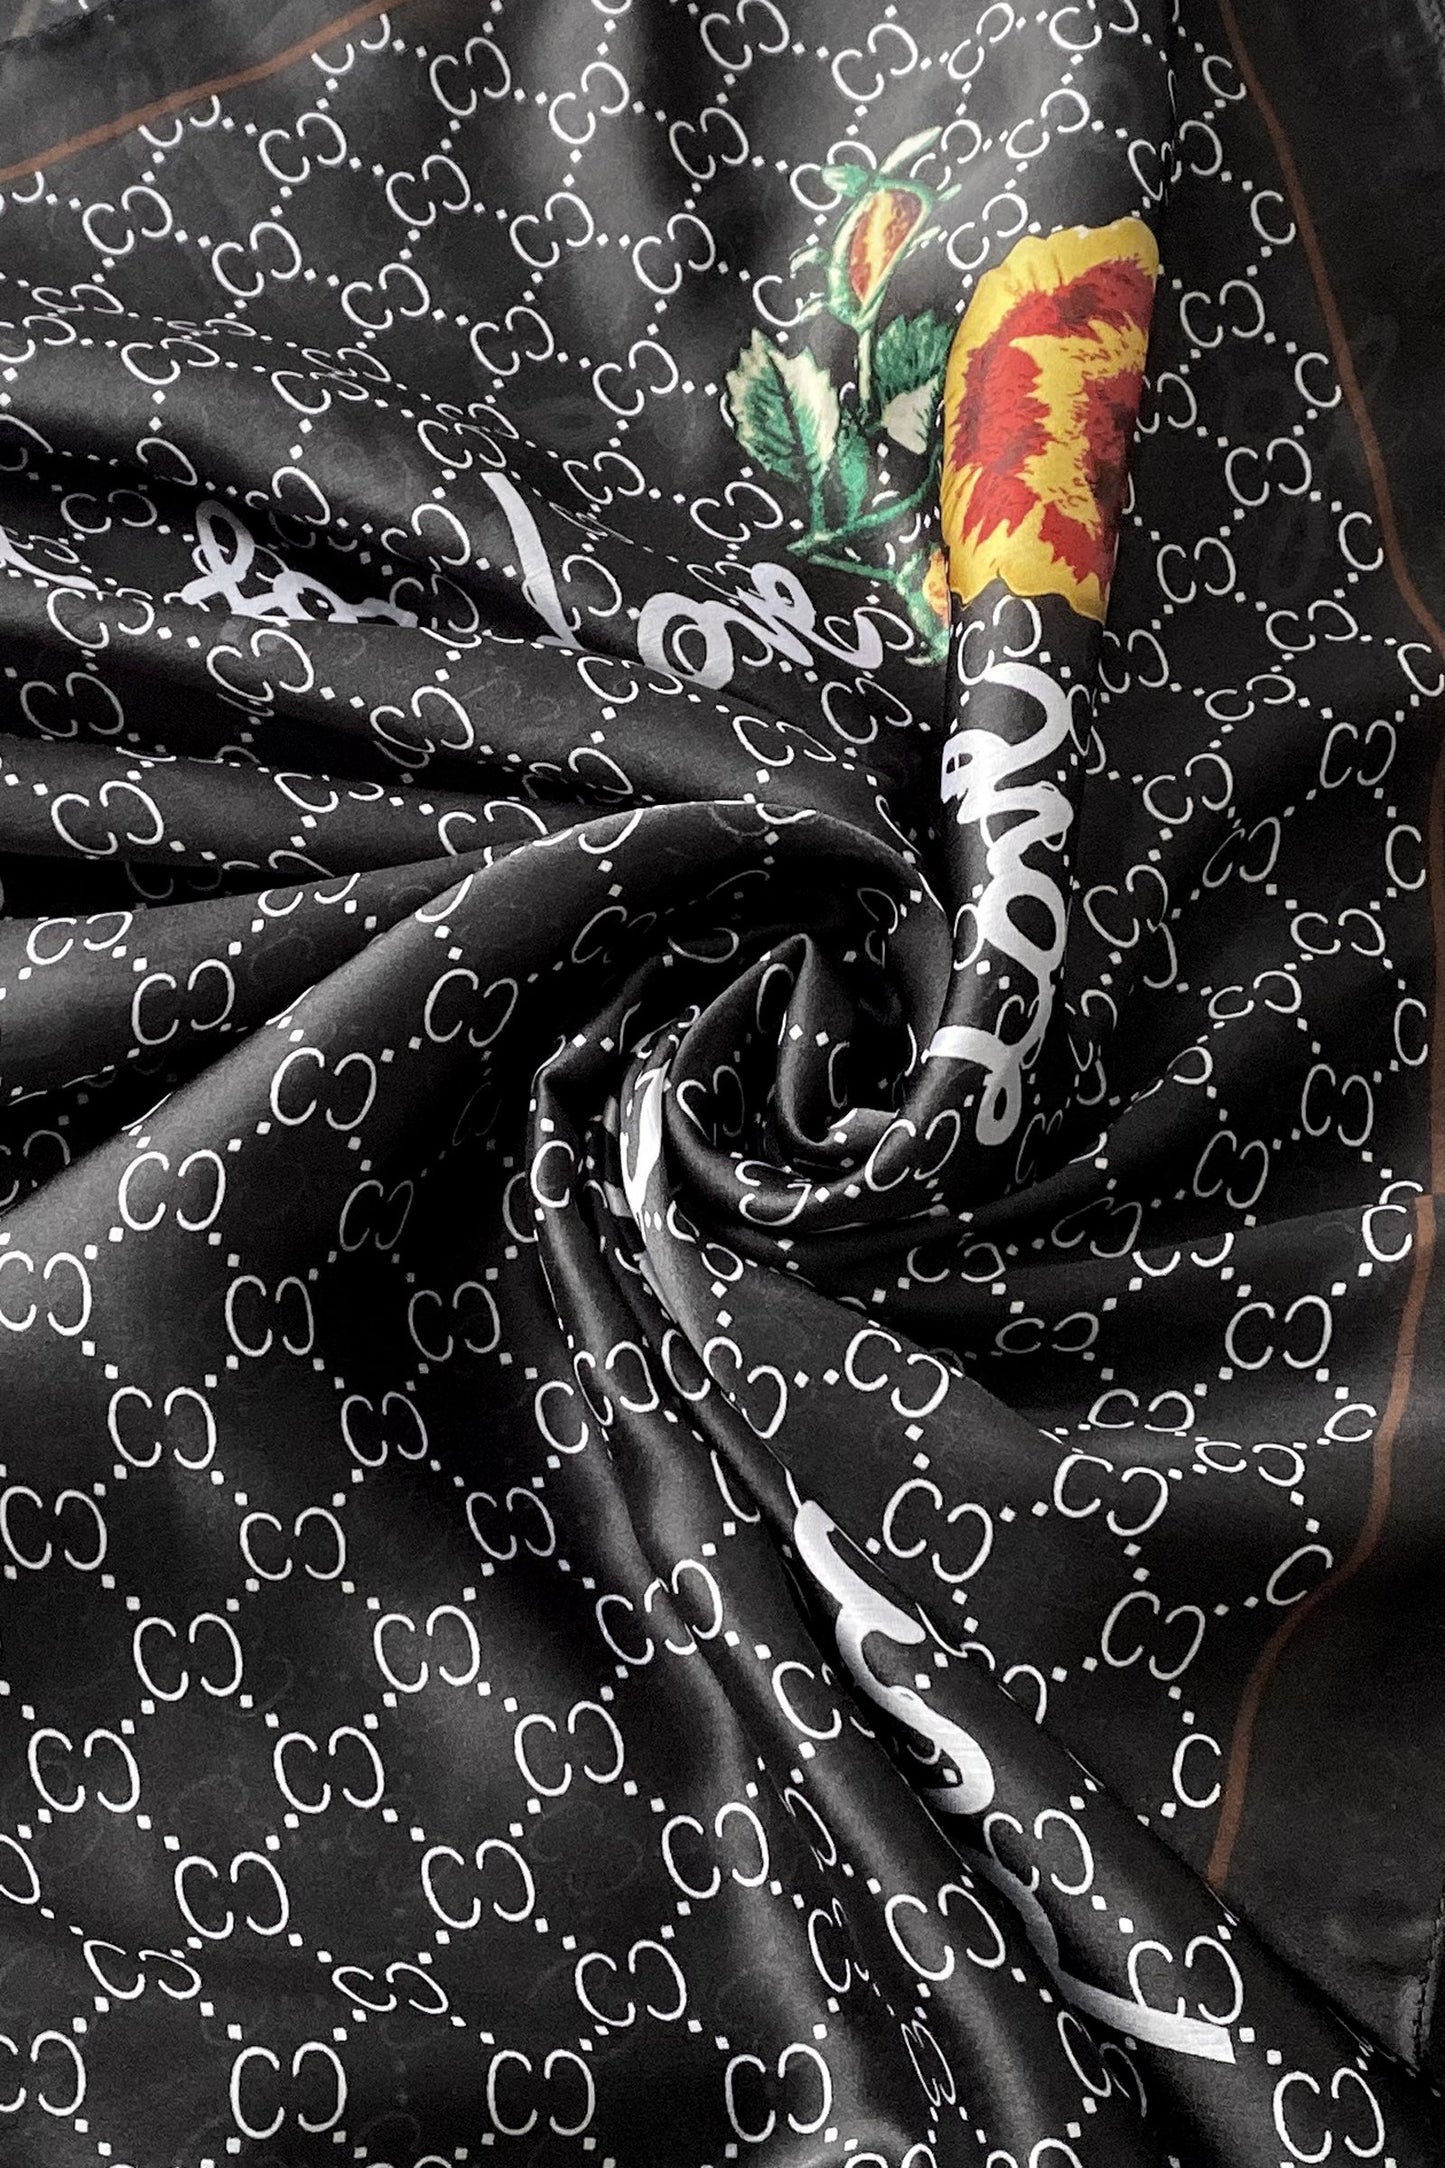 Hedvábná šála-šátek, 90 cm x 180 cm, s ozdobným textem, černá